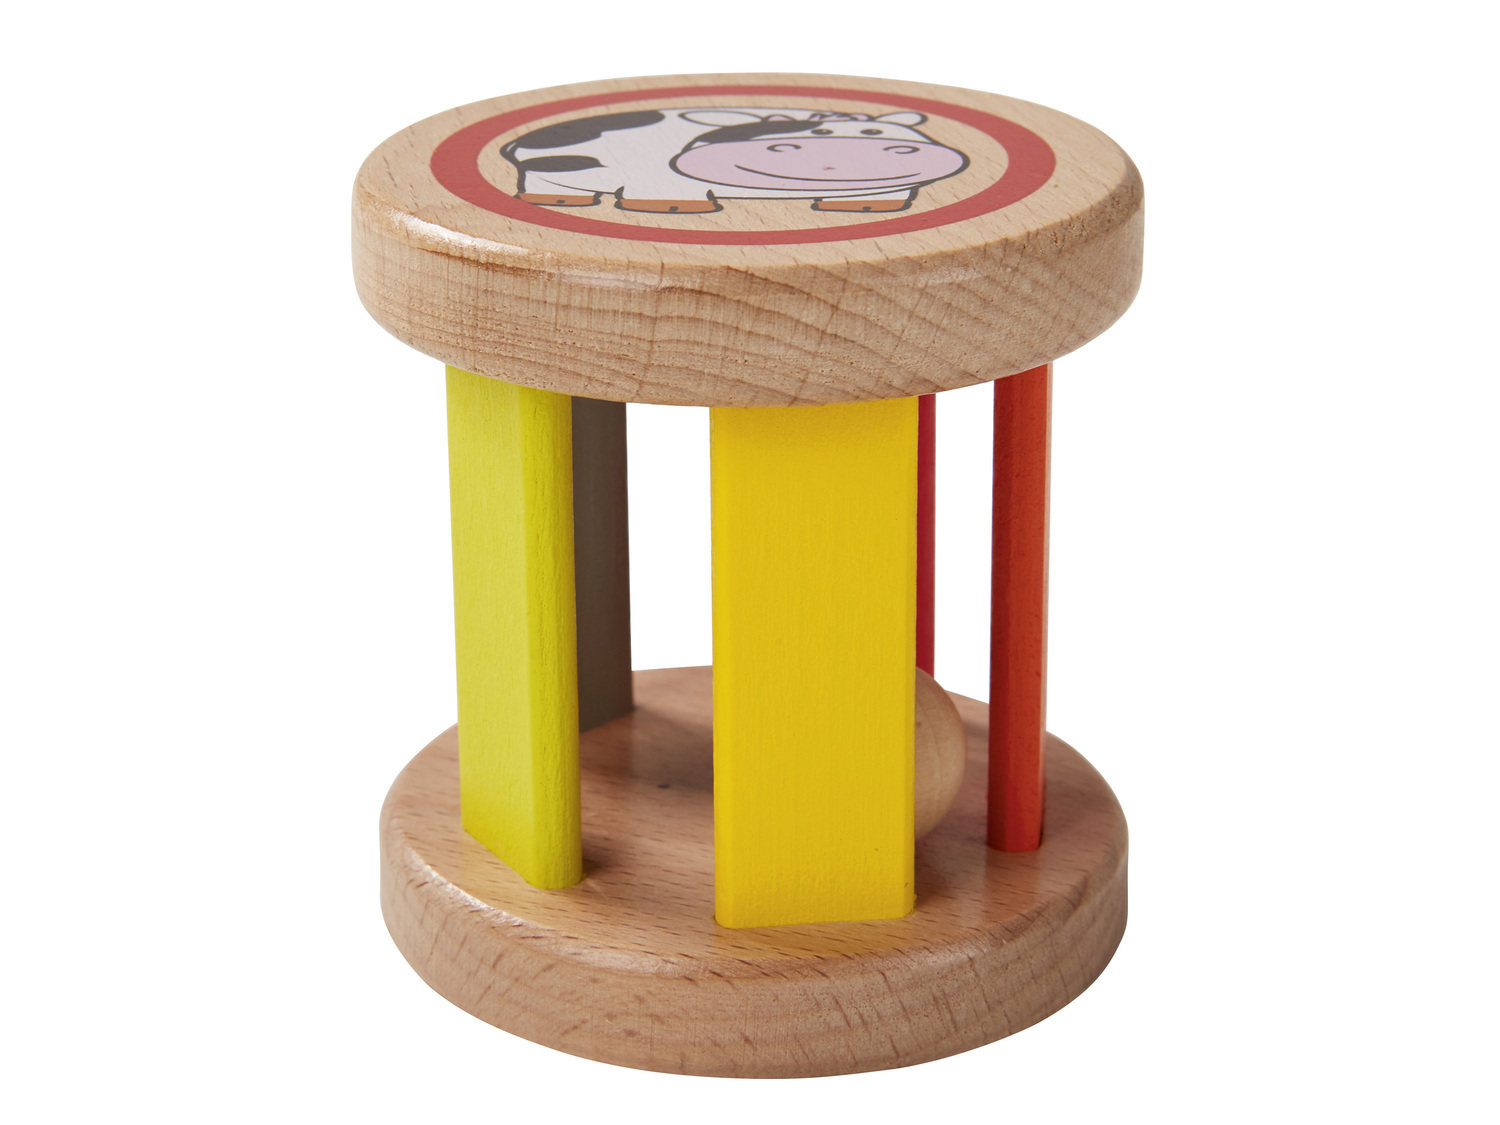 Drewniana zabawka , cena 4,00 PLN 
różne wzory 
- wspomaga rozwój dziecka
Opis

- ...